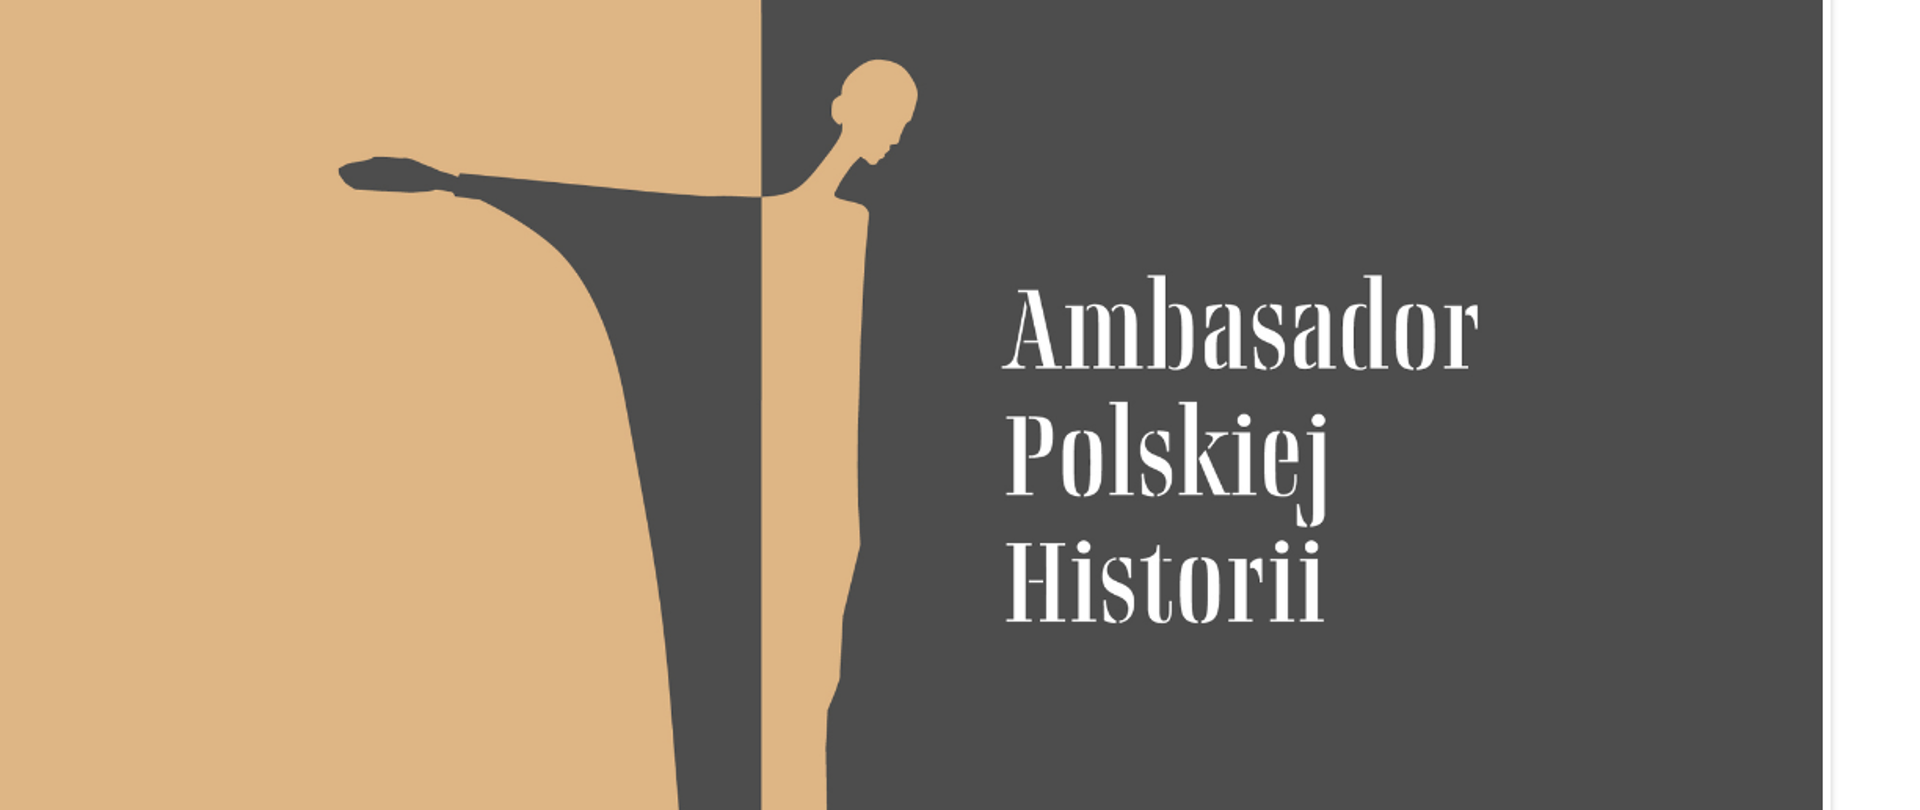 Ambasador_Polskiej_Historii